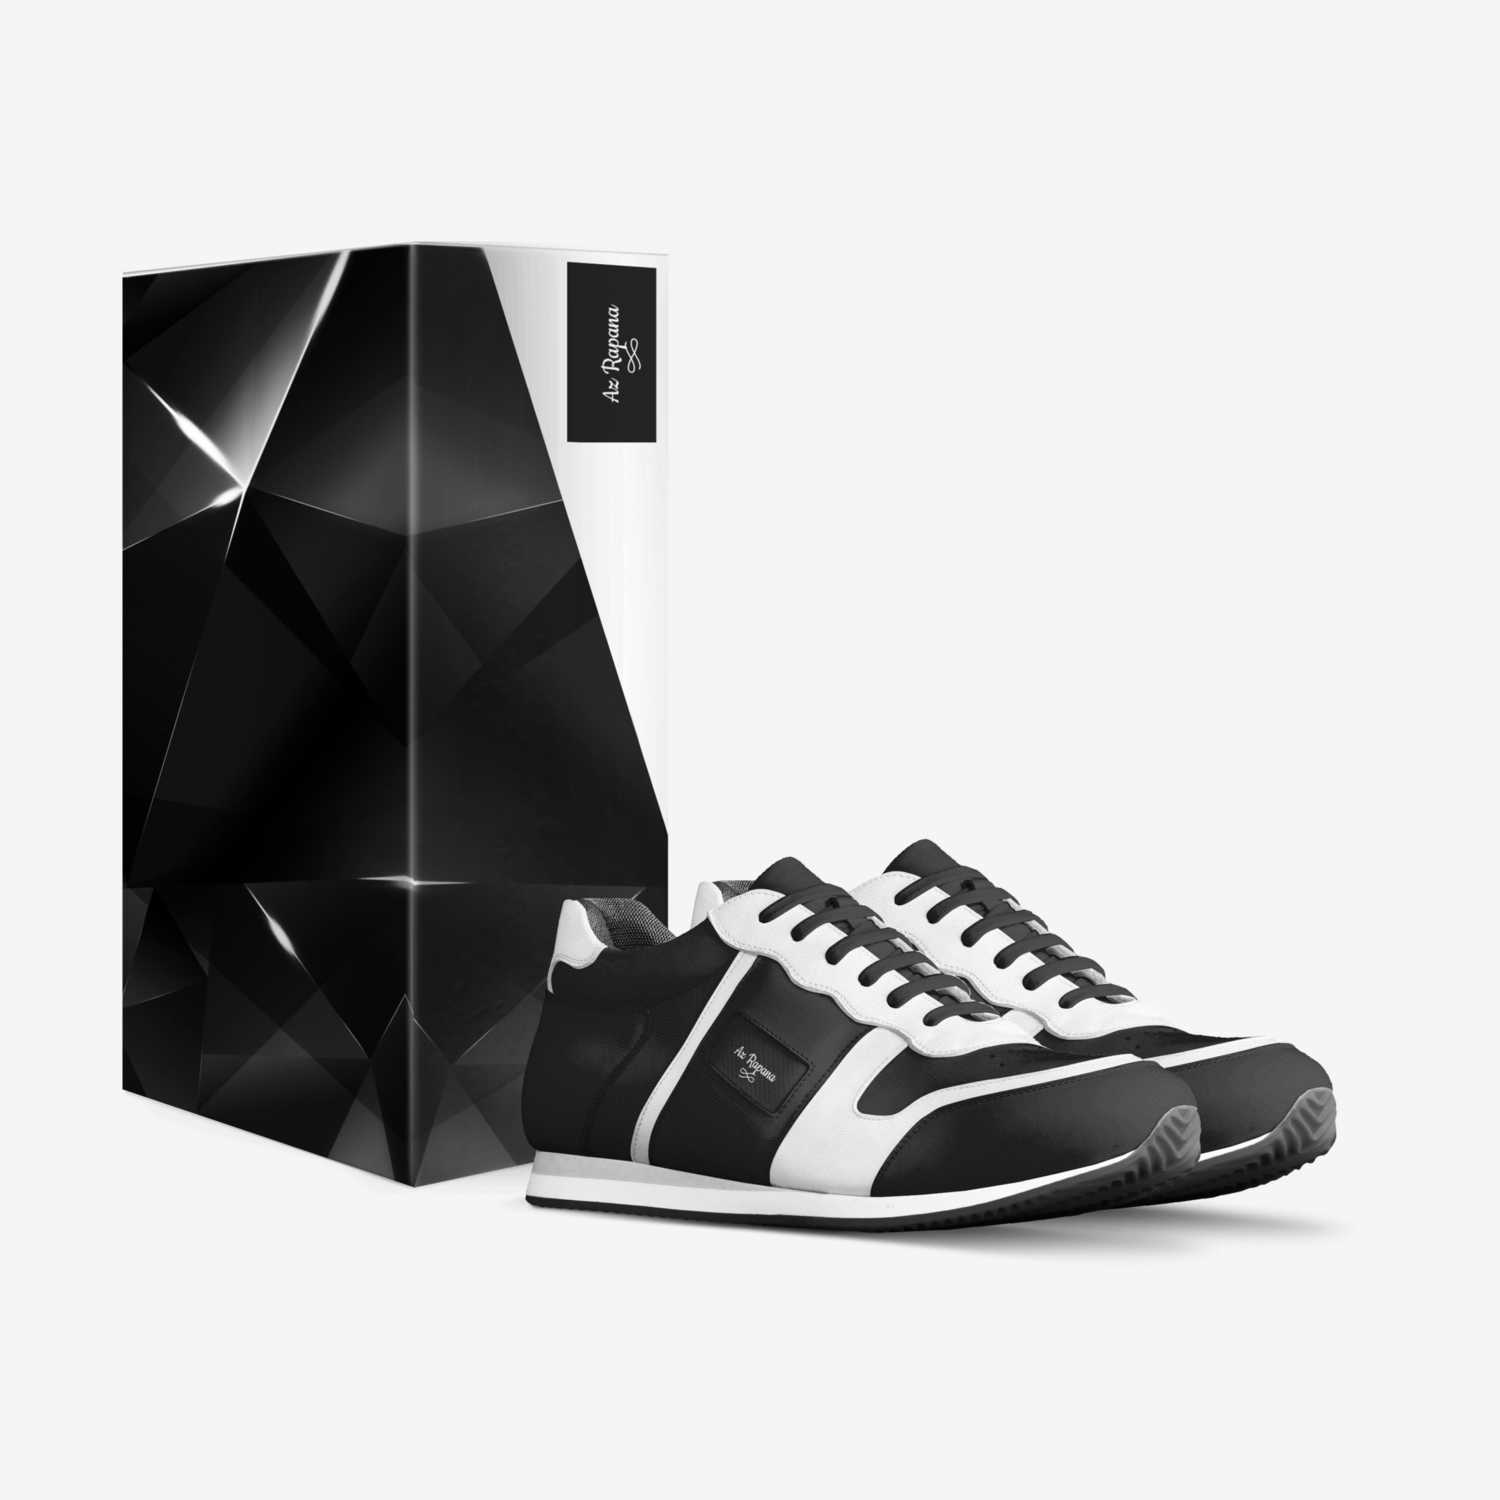 Az Rapana custom made in Italy shoes by Az Rapana | Box view